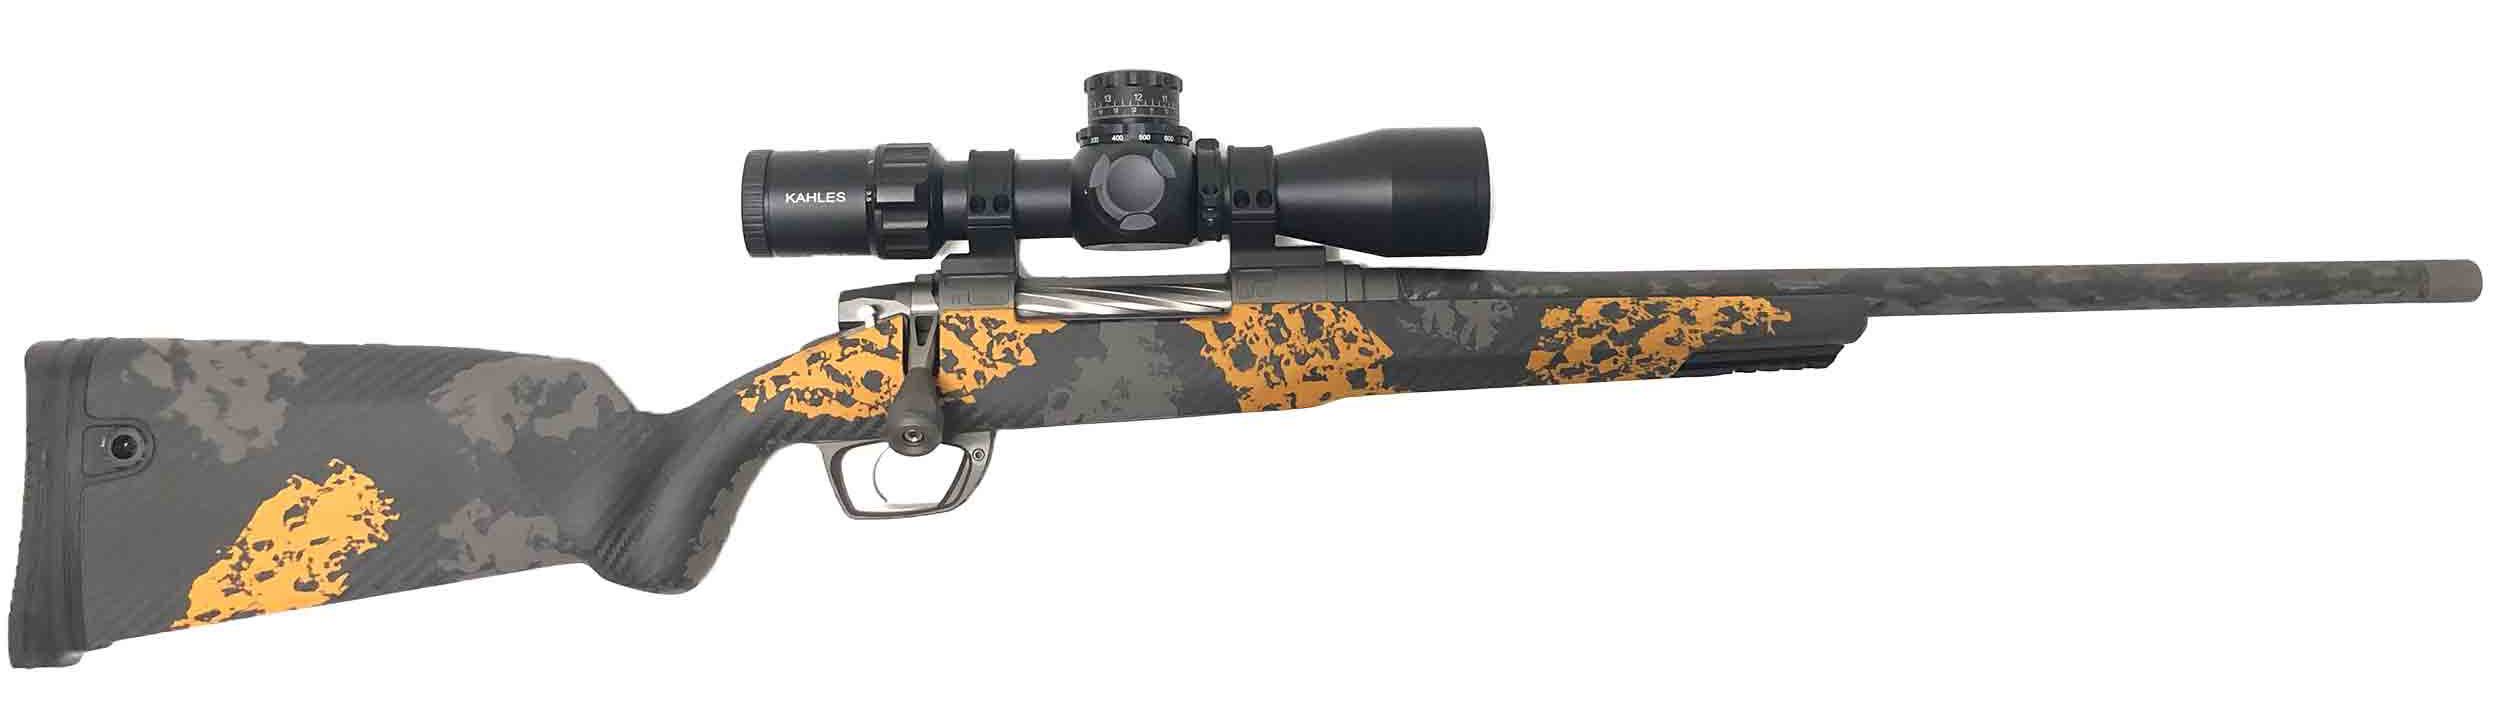 Clymr Rifle.6.5PRC, Carbon Orange, Kahles K318i SKMR3 MIL|f3056